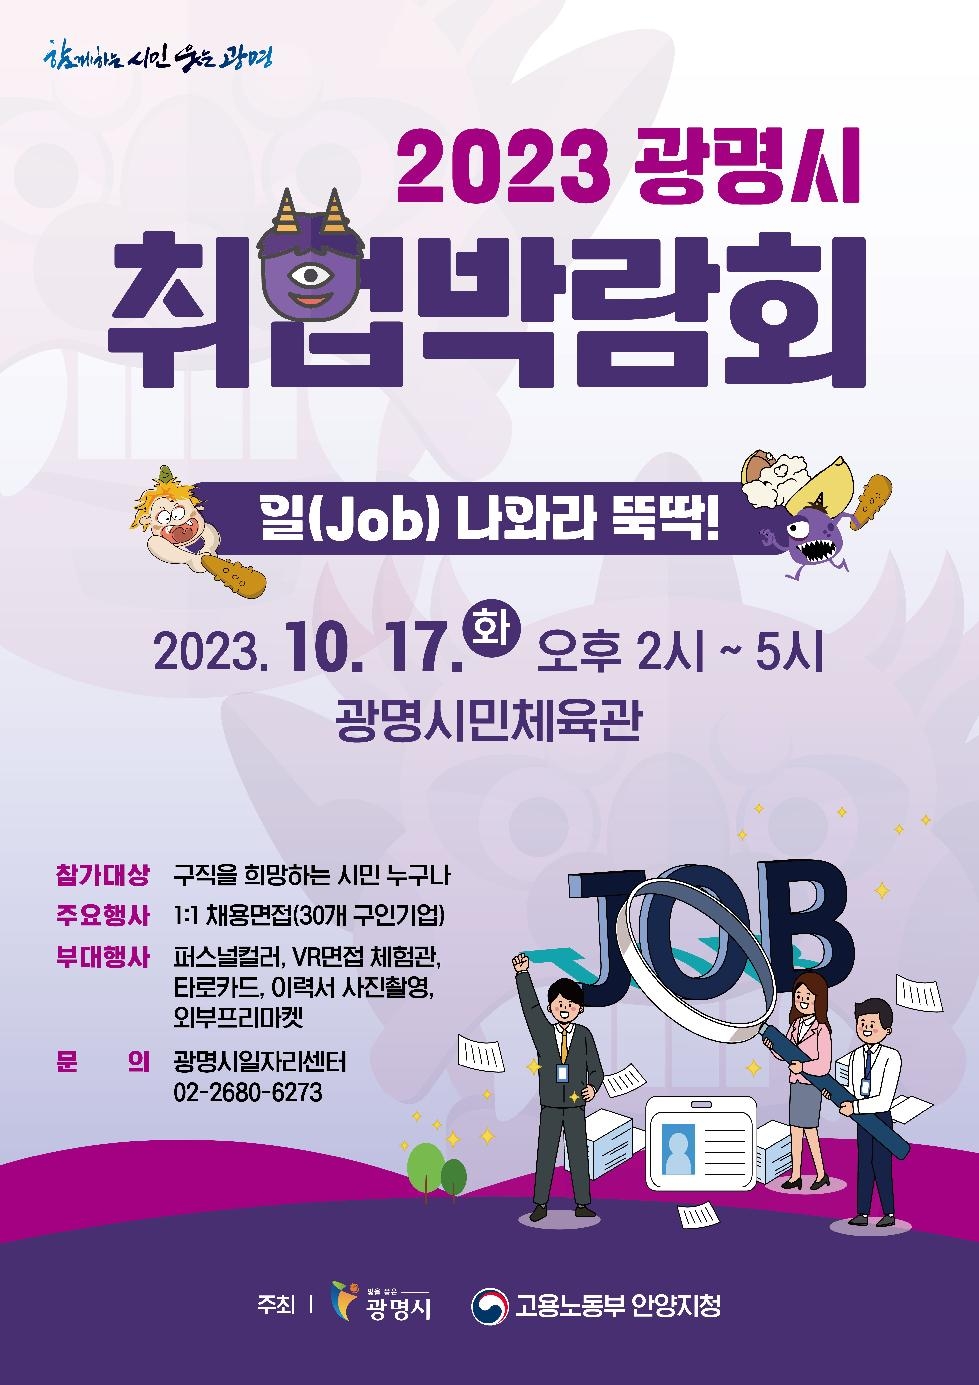 “일(job) 나와라 뚝딱!”… 17일 광명시 취업박람회 개최